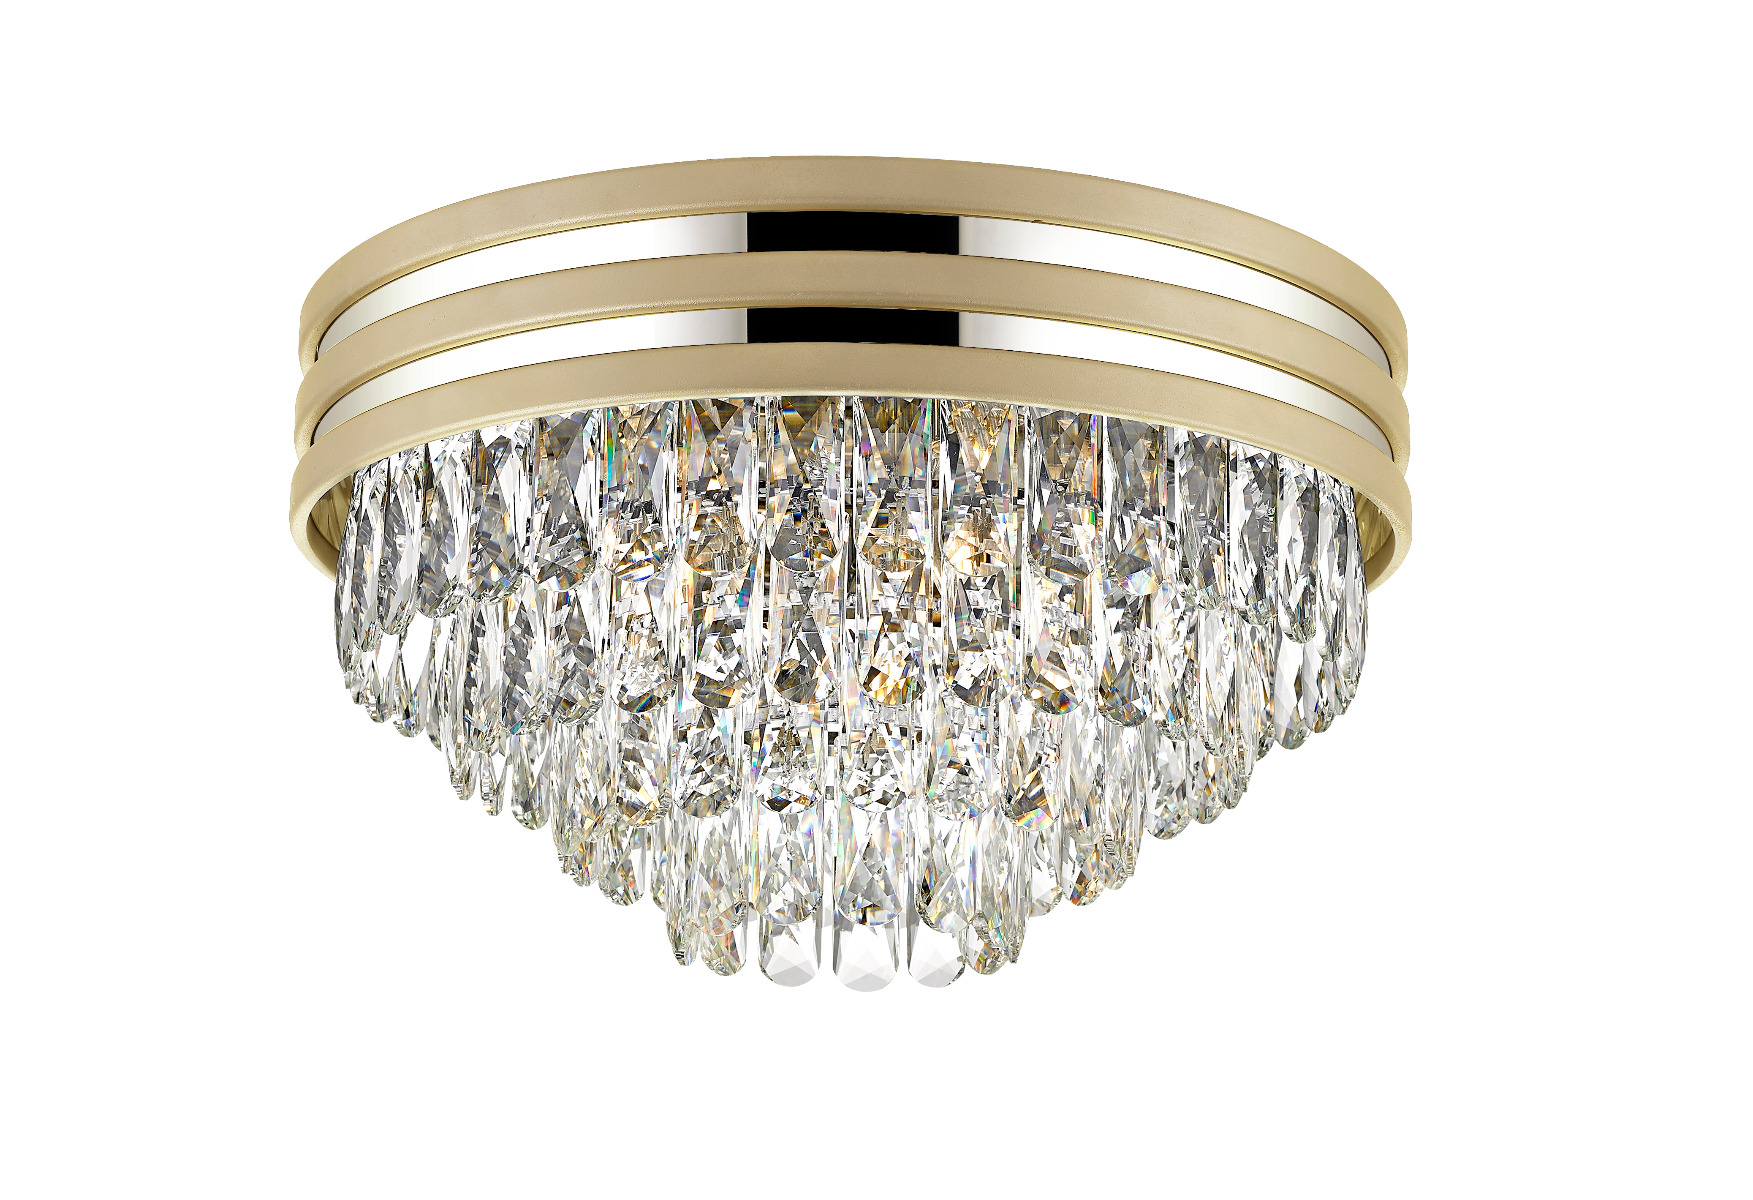 Naica Lampa plafon kryształowy Ø 46cm złota satyna/chrom C0525-05A-V6B5 Zuma Line